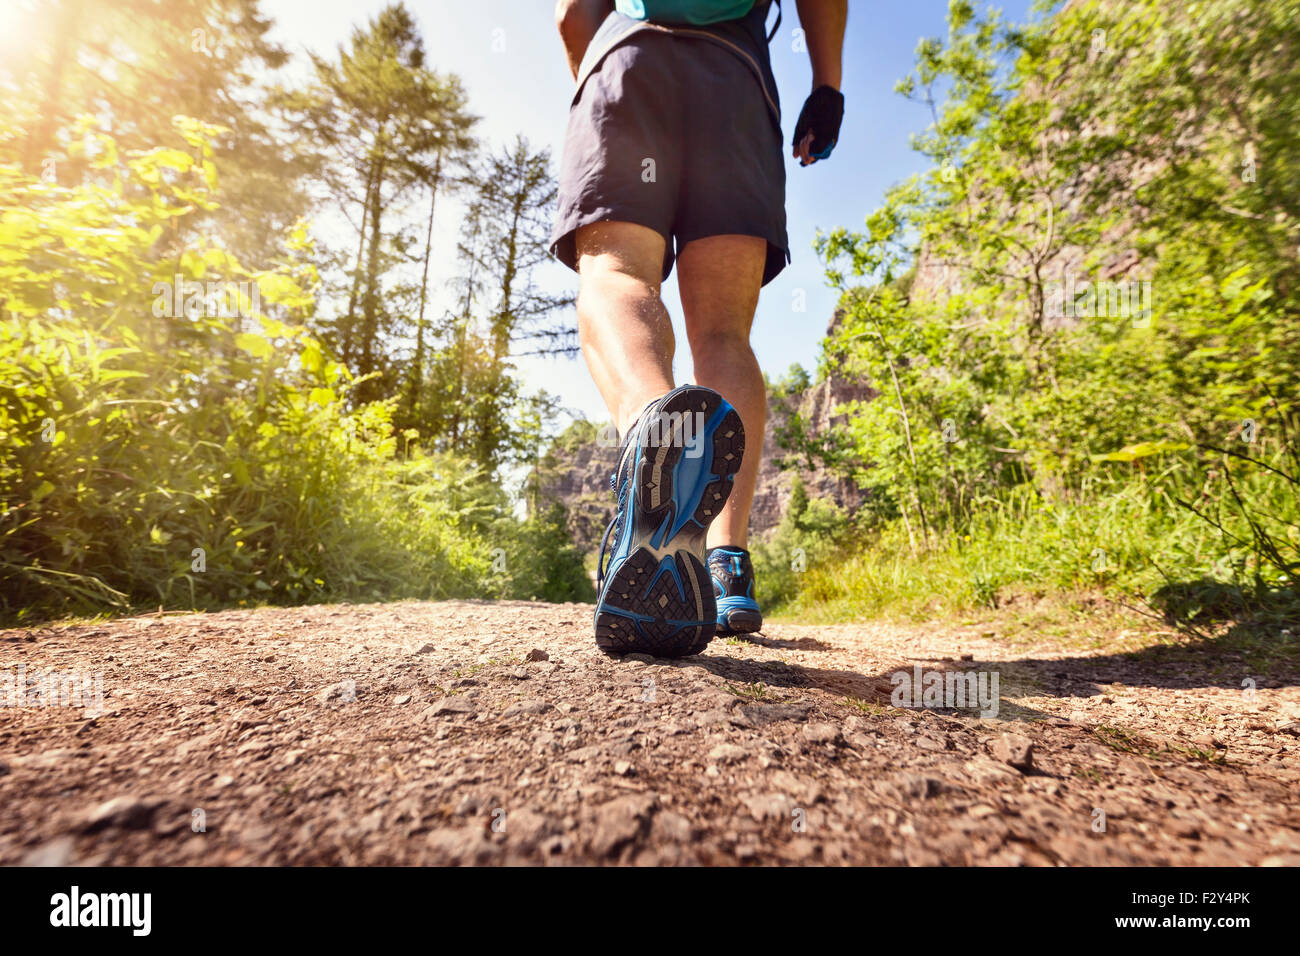 Mann Joggen oder Erwachen im Freien auf einem Wanderweg oder einem Pfad Konzept für gesunde Lebensweise, sport, Training, Running und fitness Stockfoto